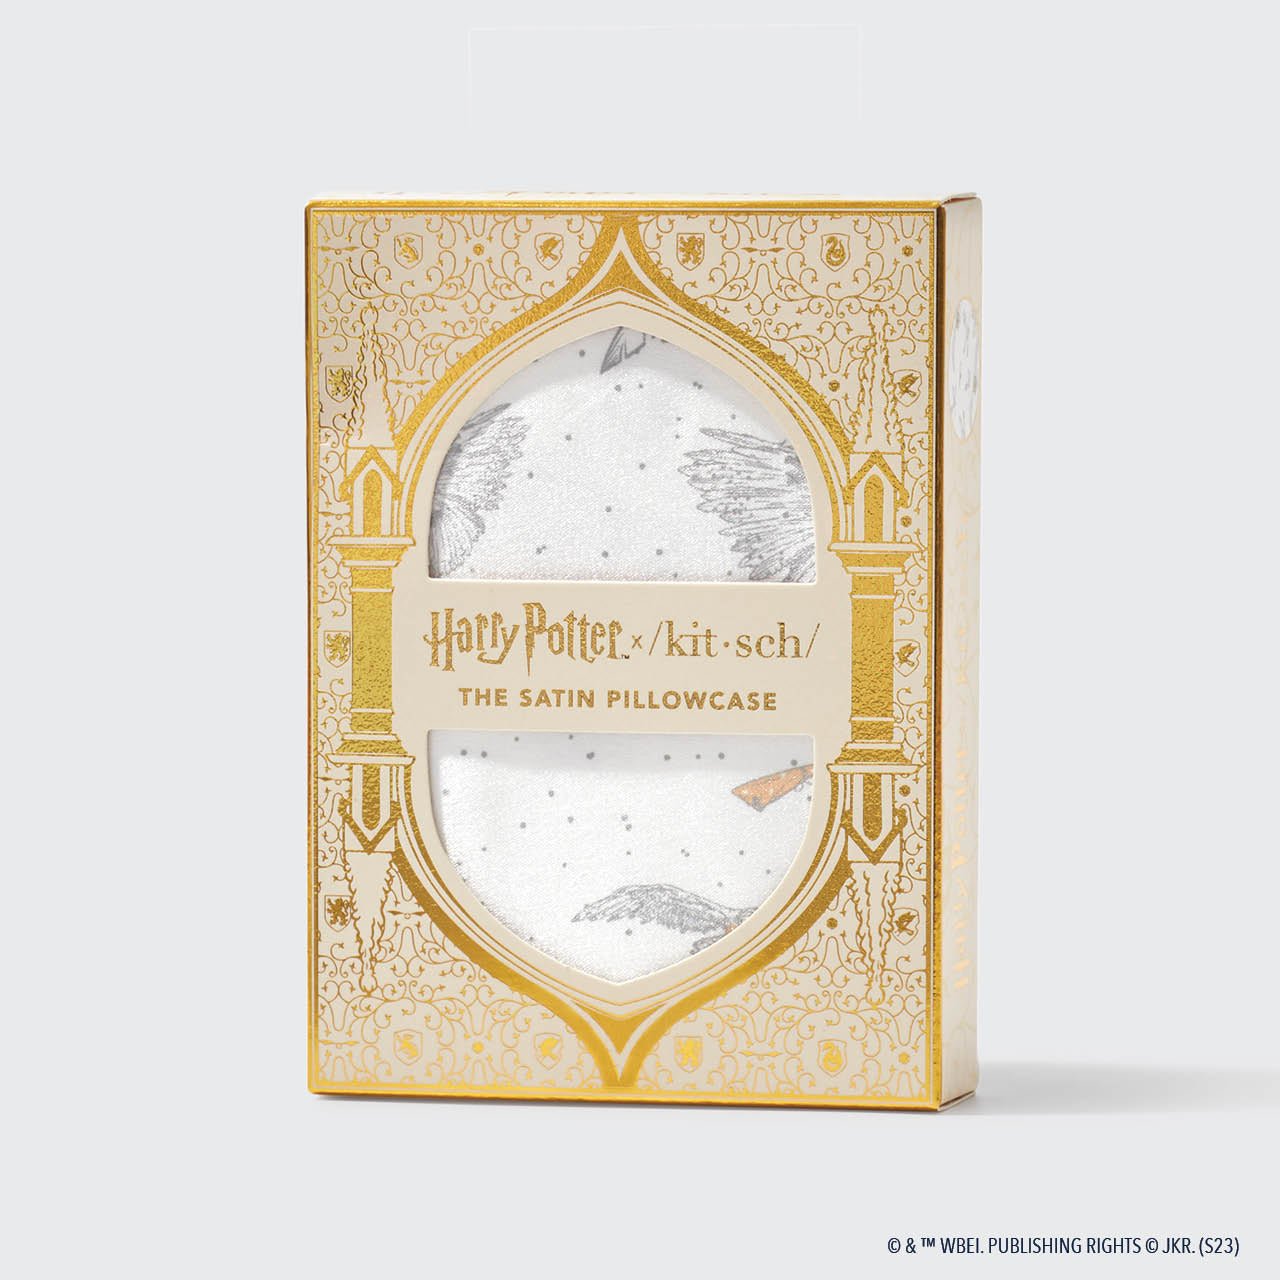 Harry Potter x Kitsch Paquete de coleccionista